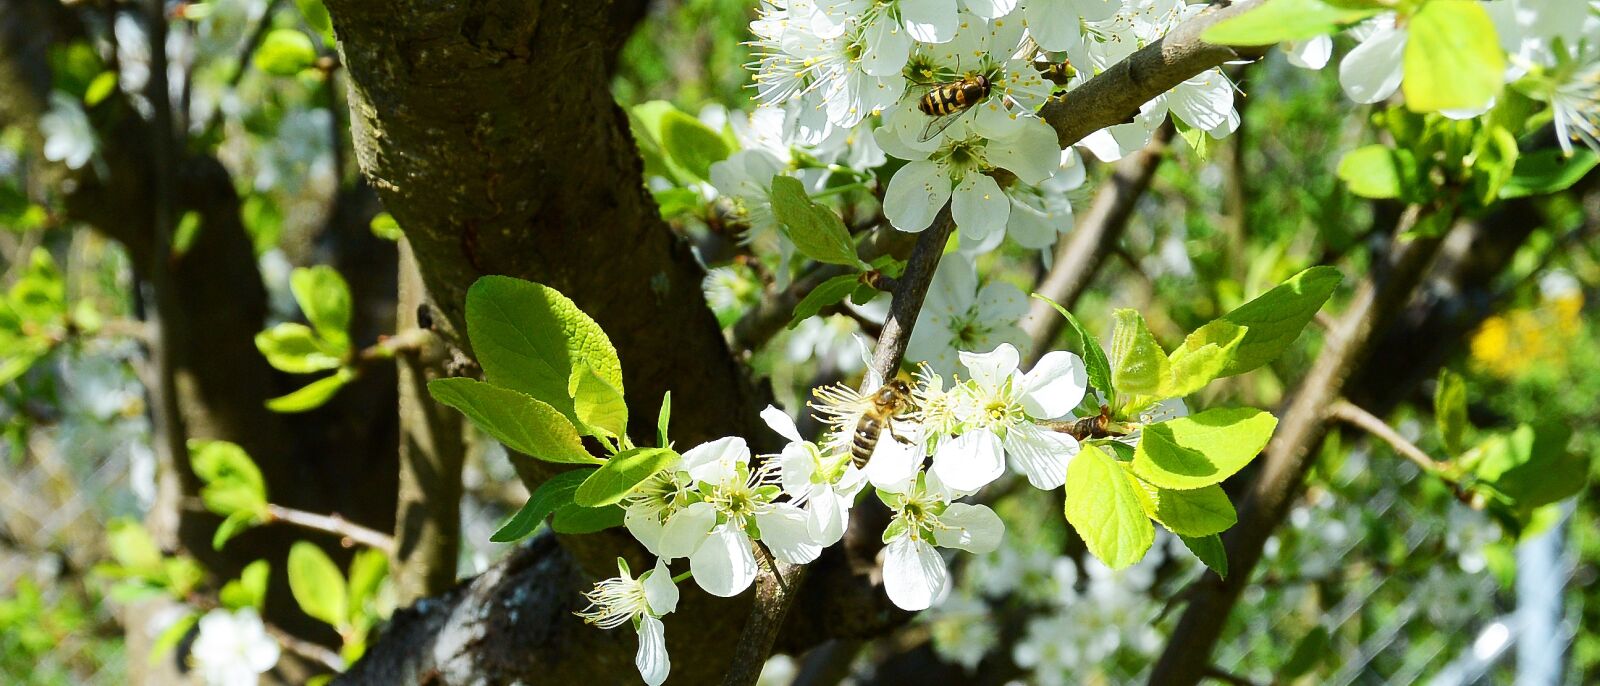 Nikon 1 Nikkor 11-27.5mm F3.5-5.6 sample photo. Apple tree, flowers, apple photography